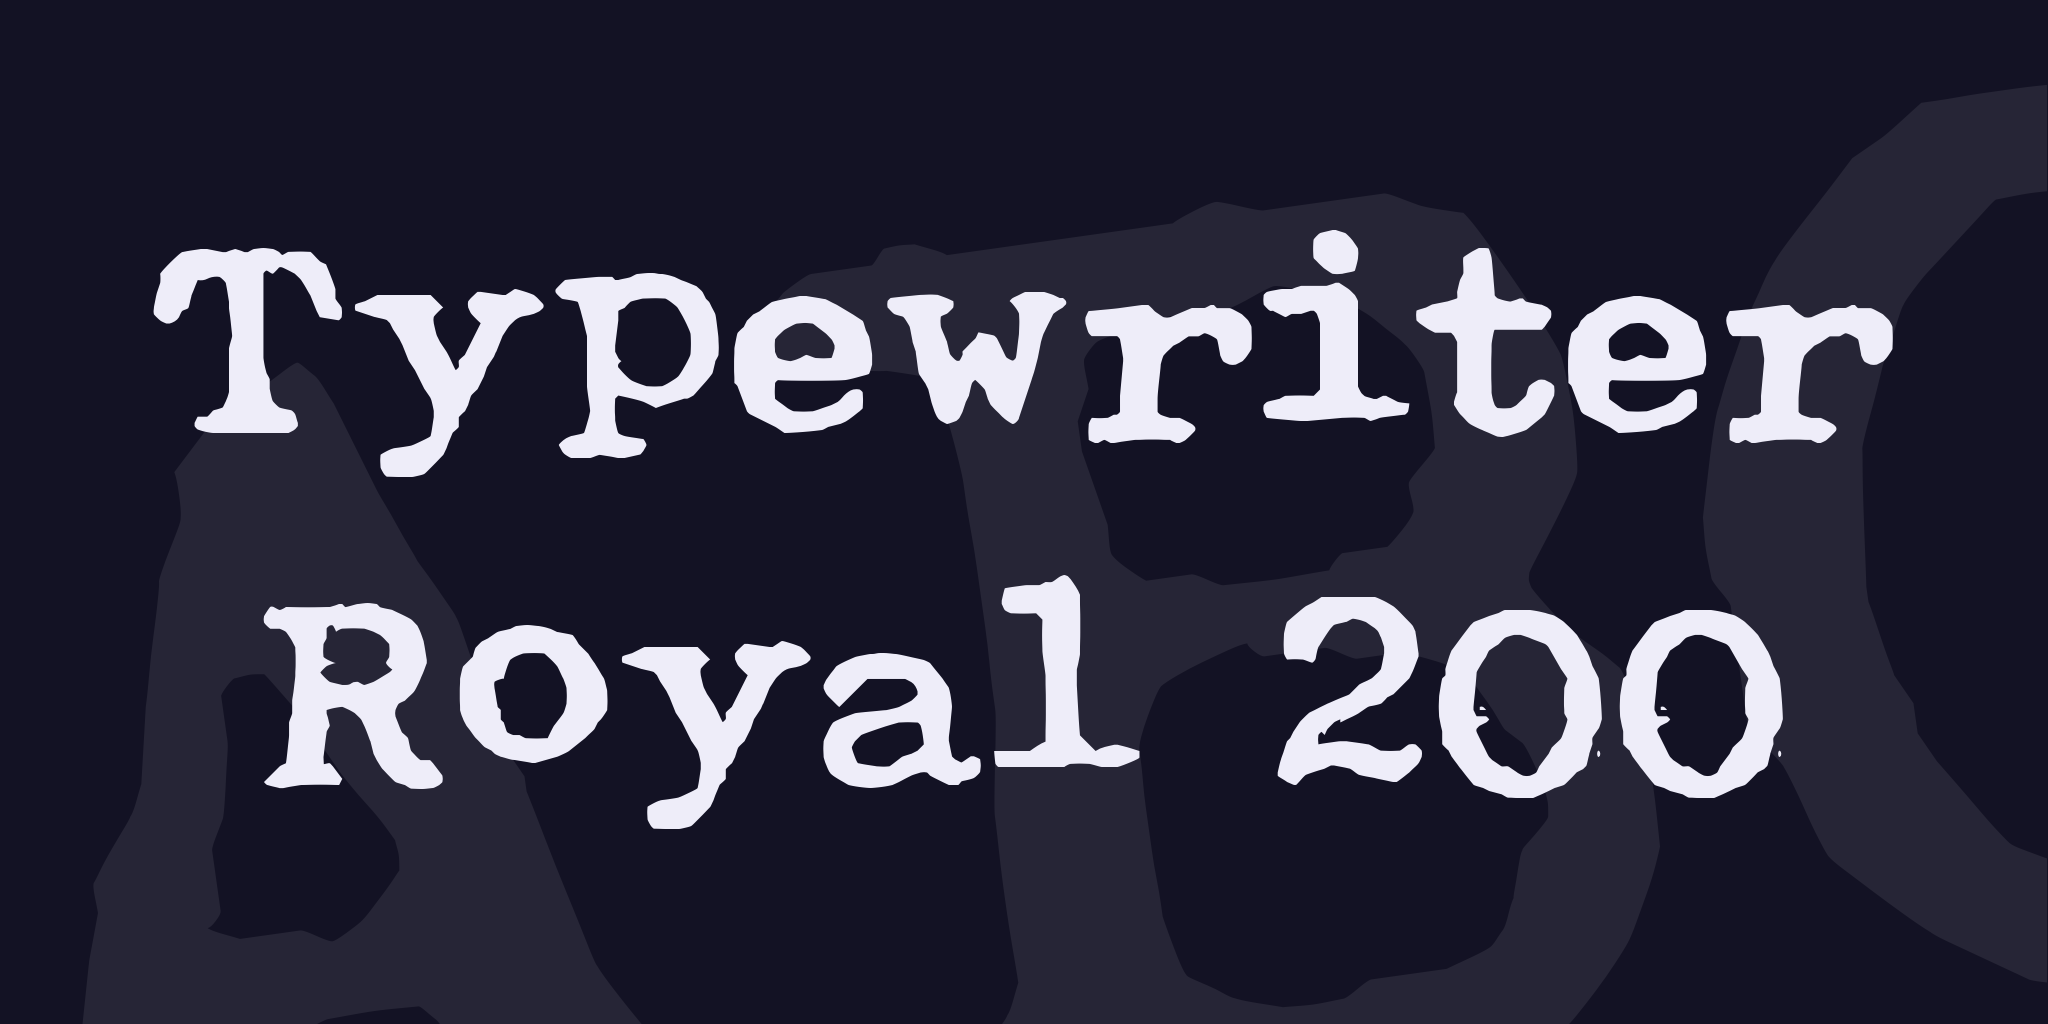 Typewriter Royal 200